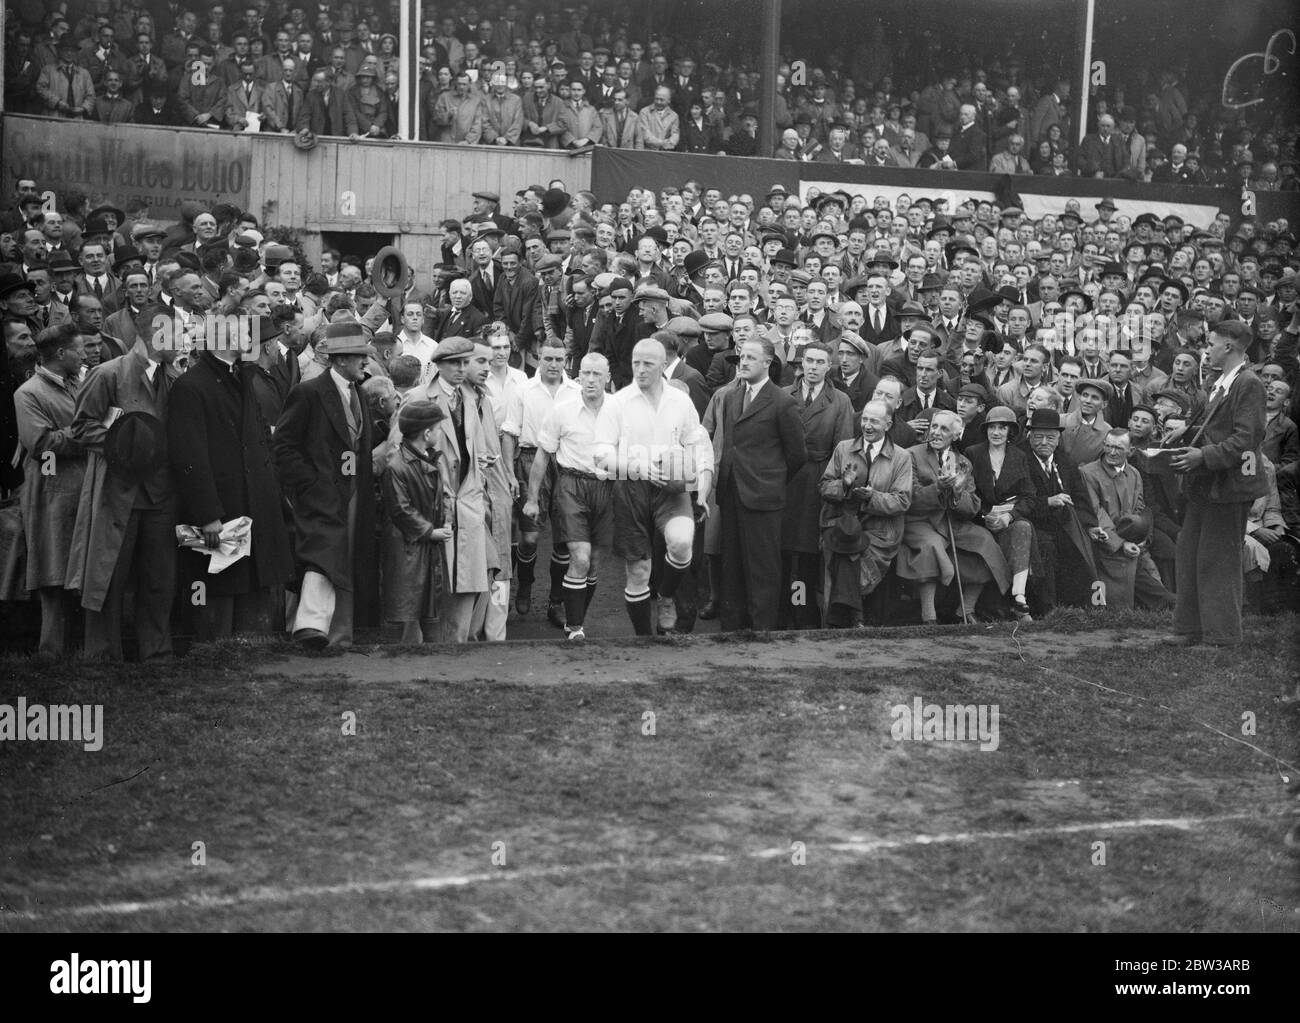 Ninian Park Fußballplatz, Cardiff. England gegen Wales . Englische Mannschaft kommt von Eddie Hapgood von Arsenal Fußballverein geführt. 29. September 1934 Stockfoto